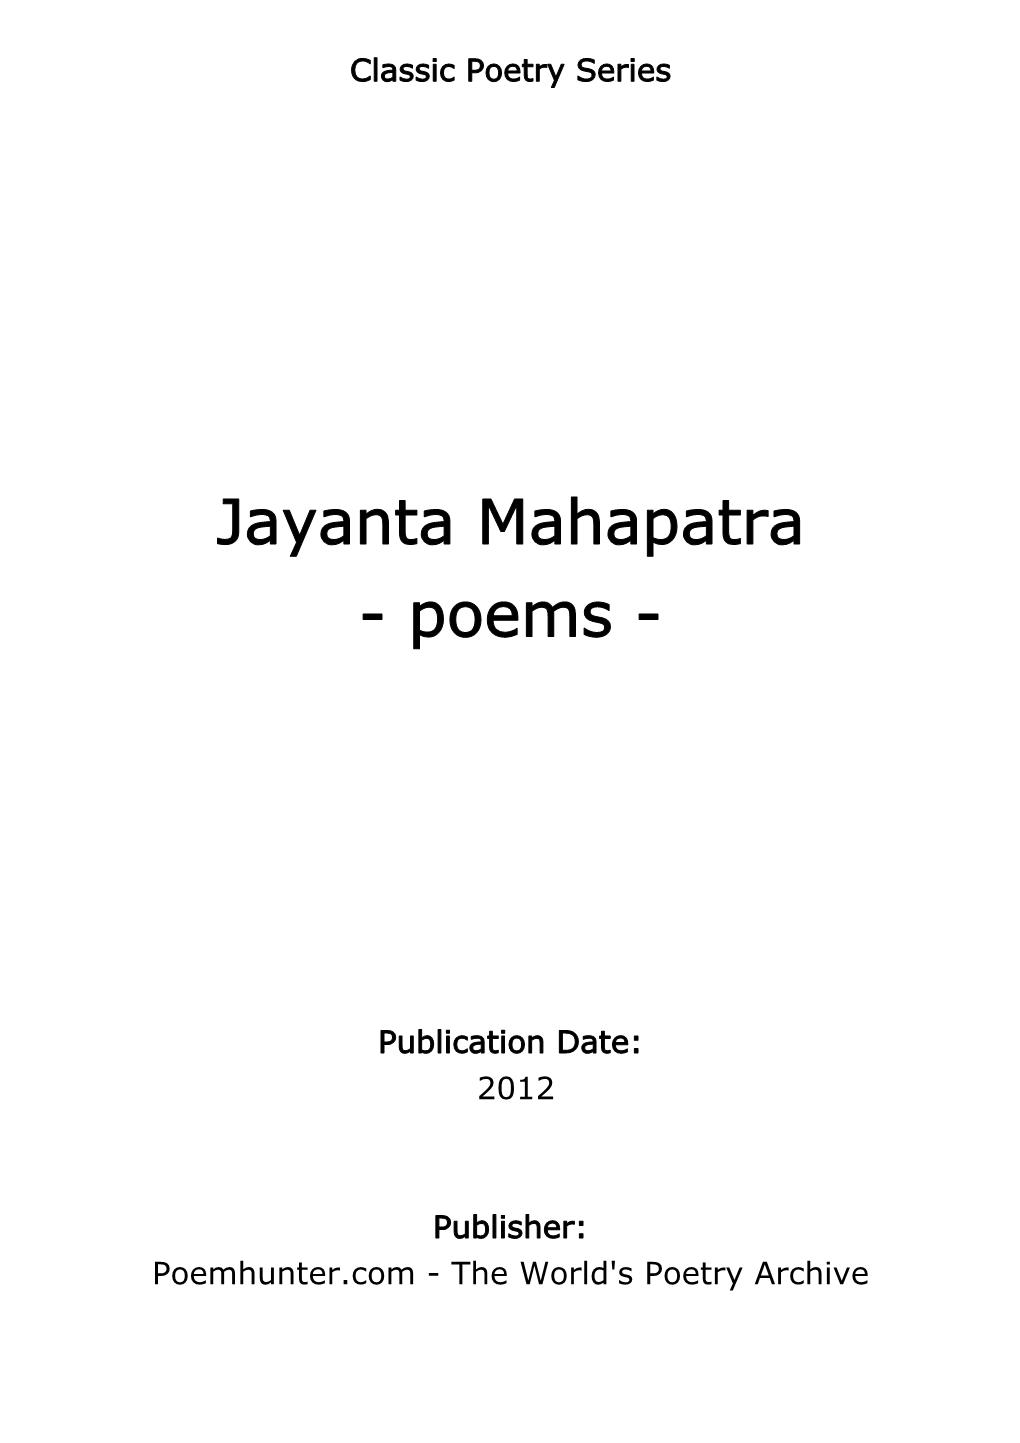 Jayanta Mahapatra - Poems